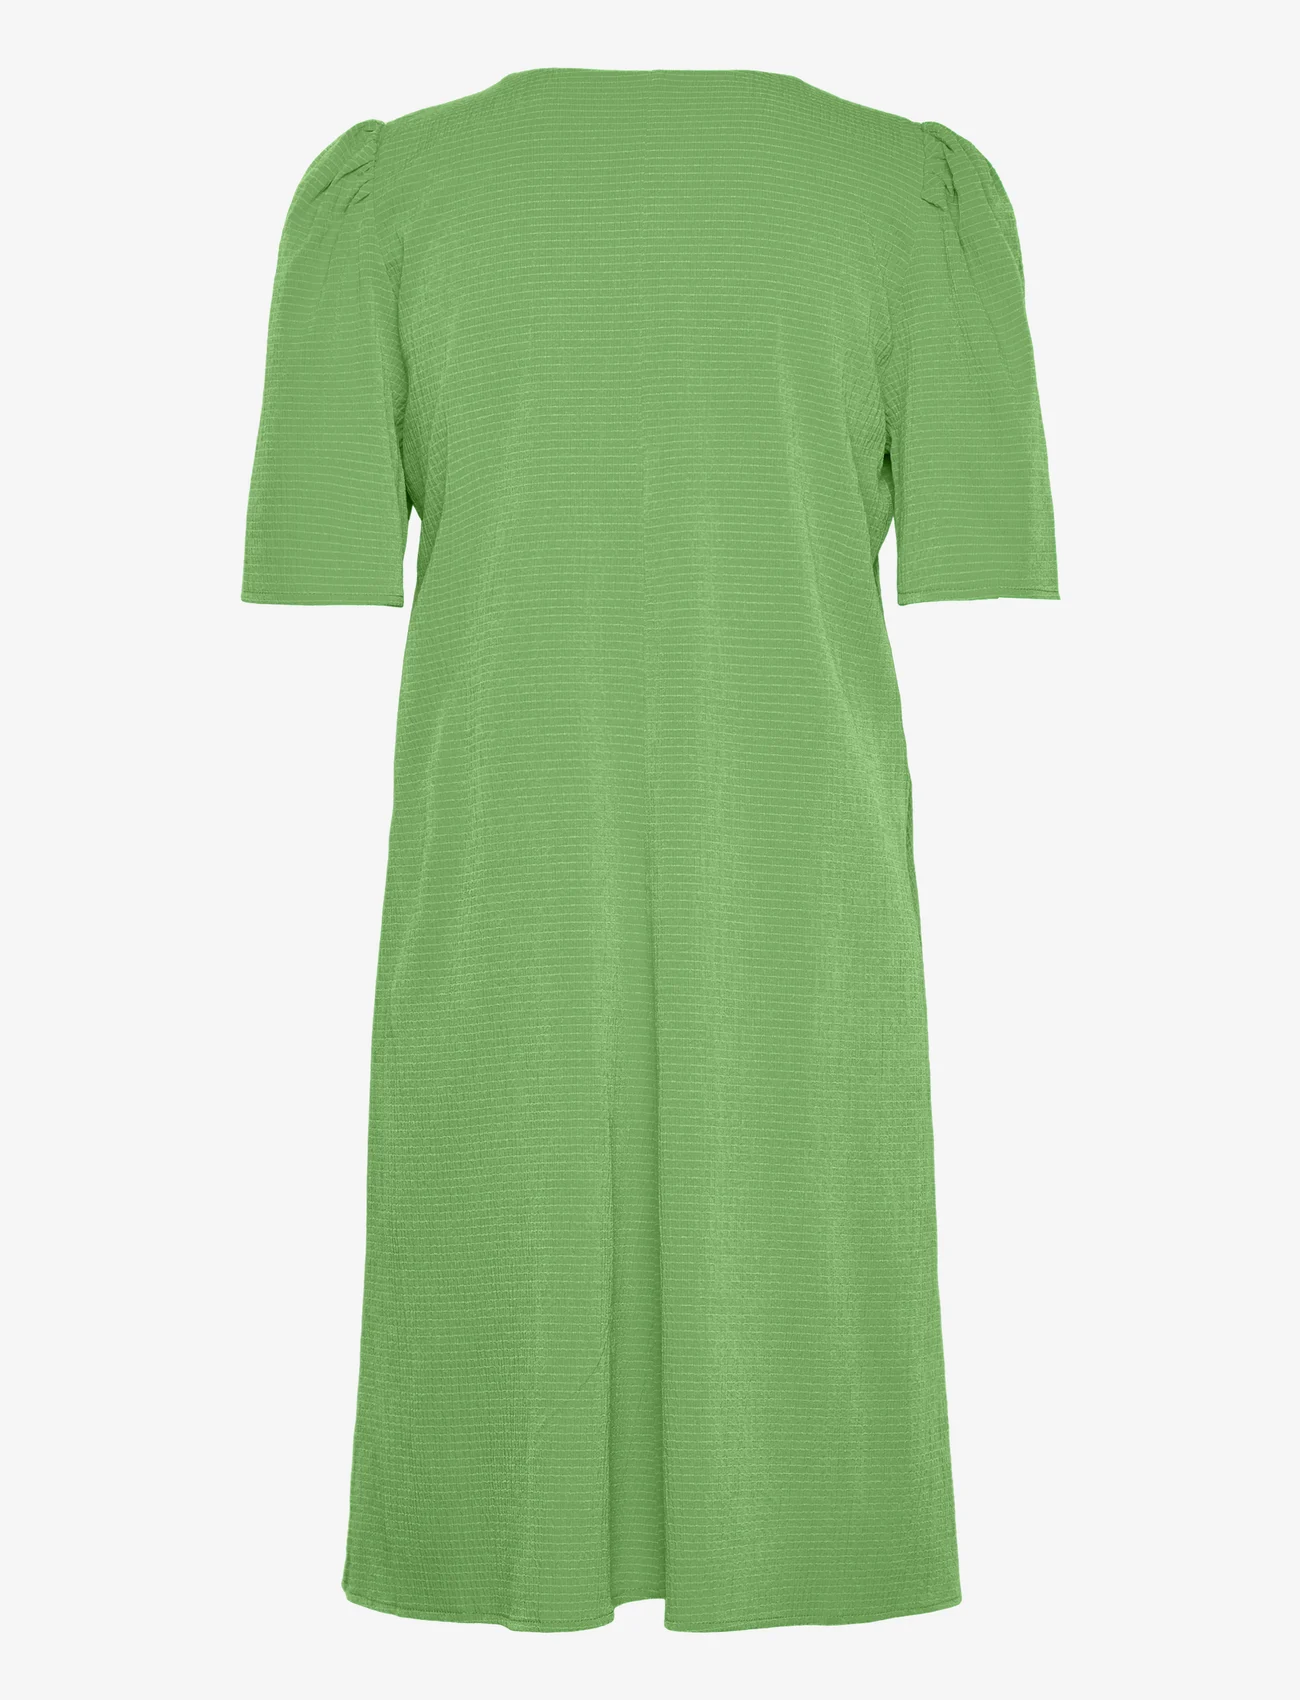 Modström - CorbaMD dress - t-skjortekjoler - classic green - 1